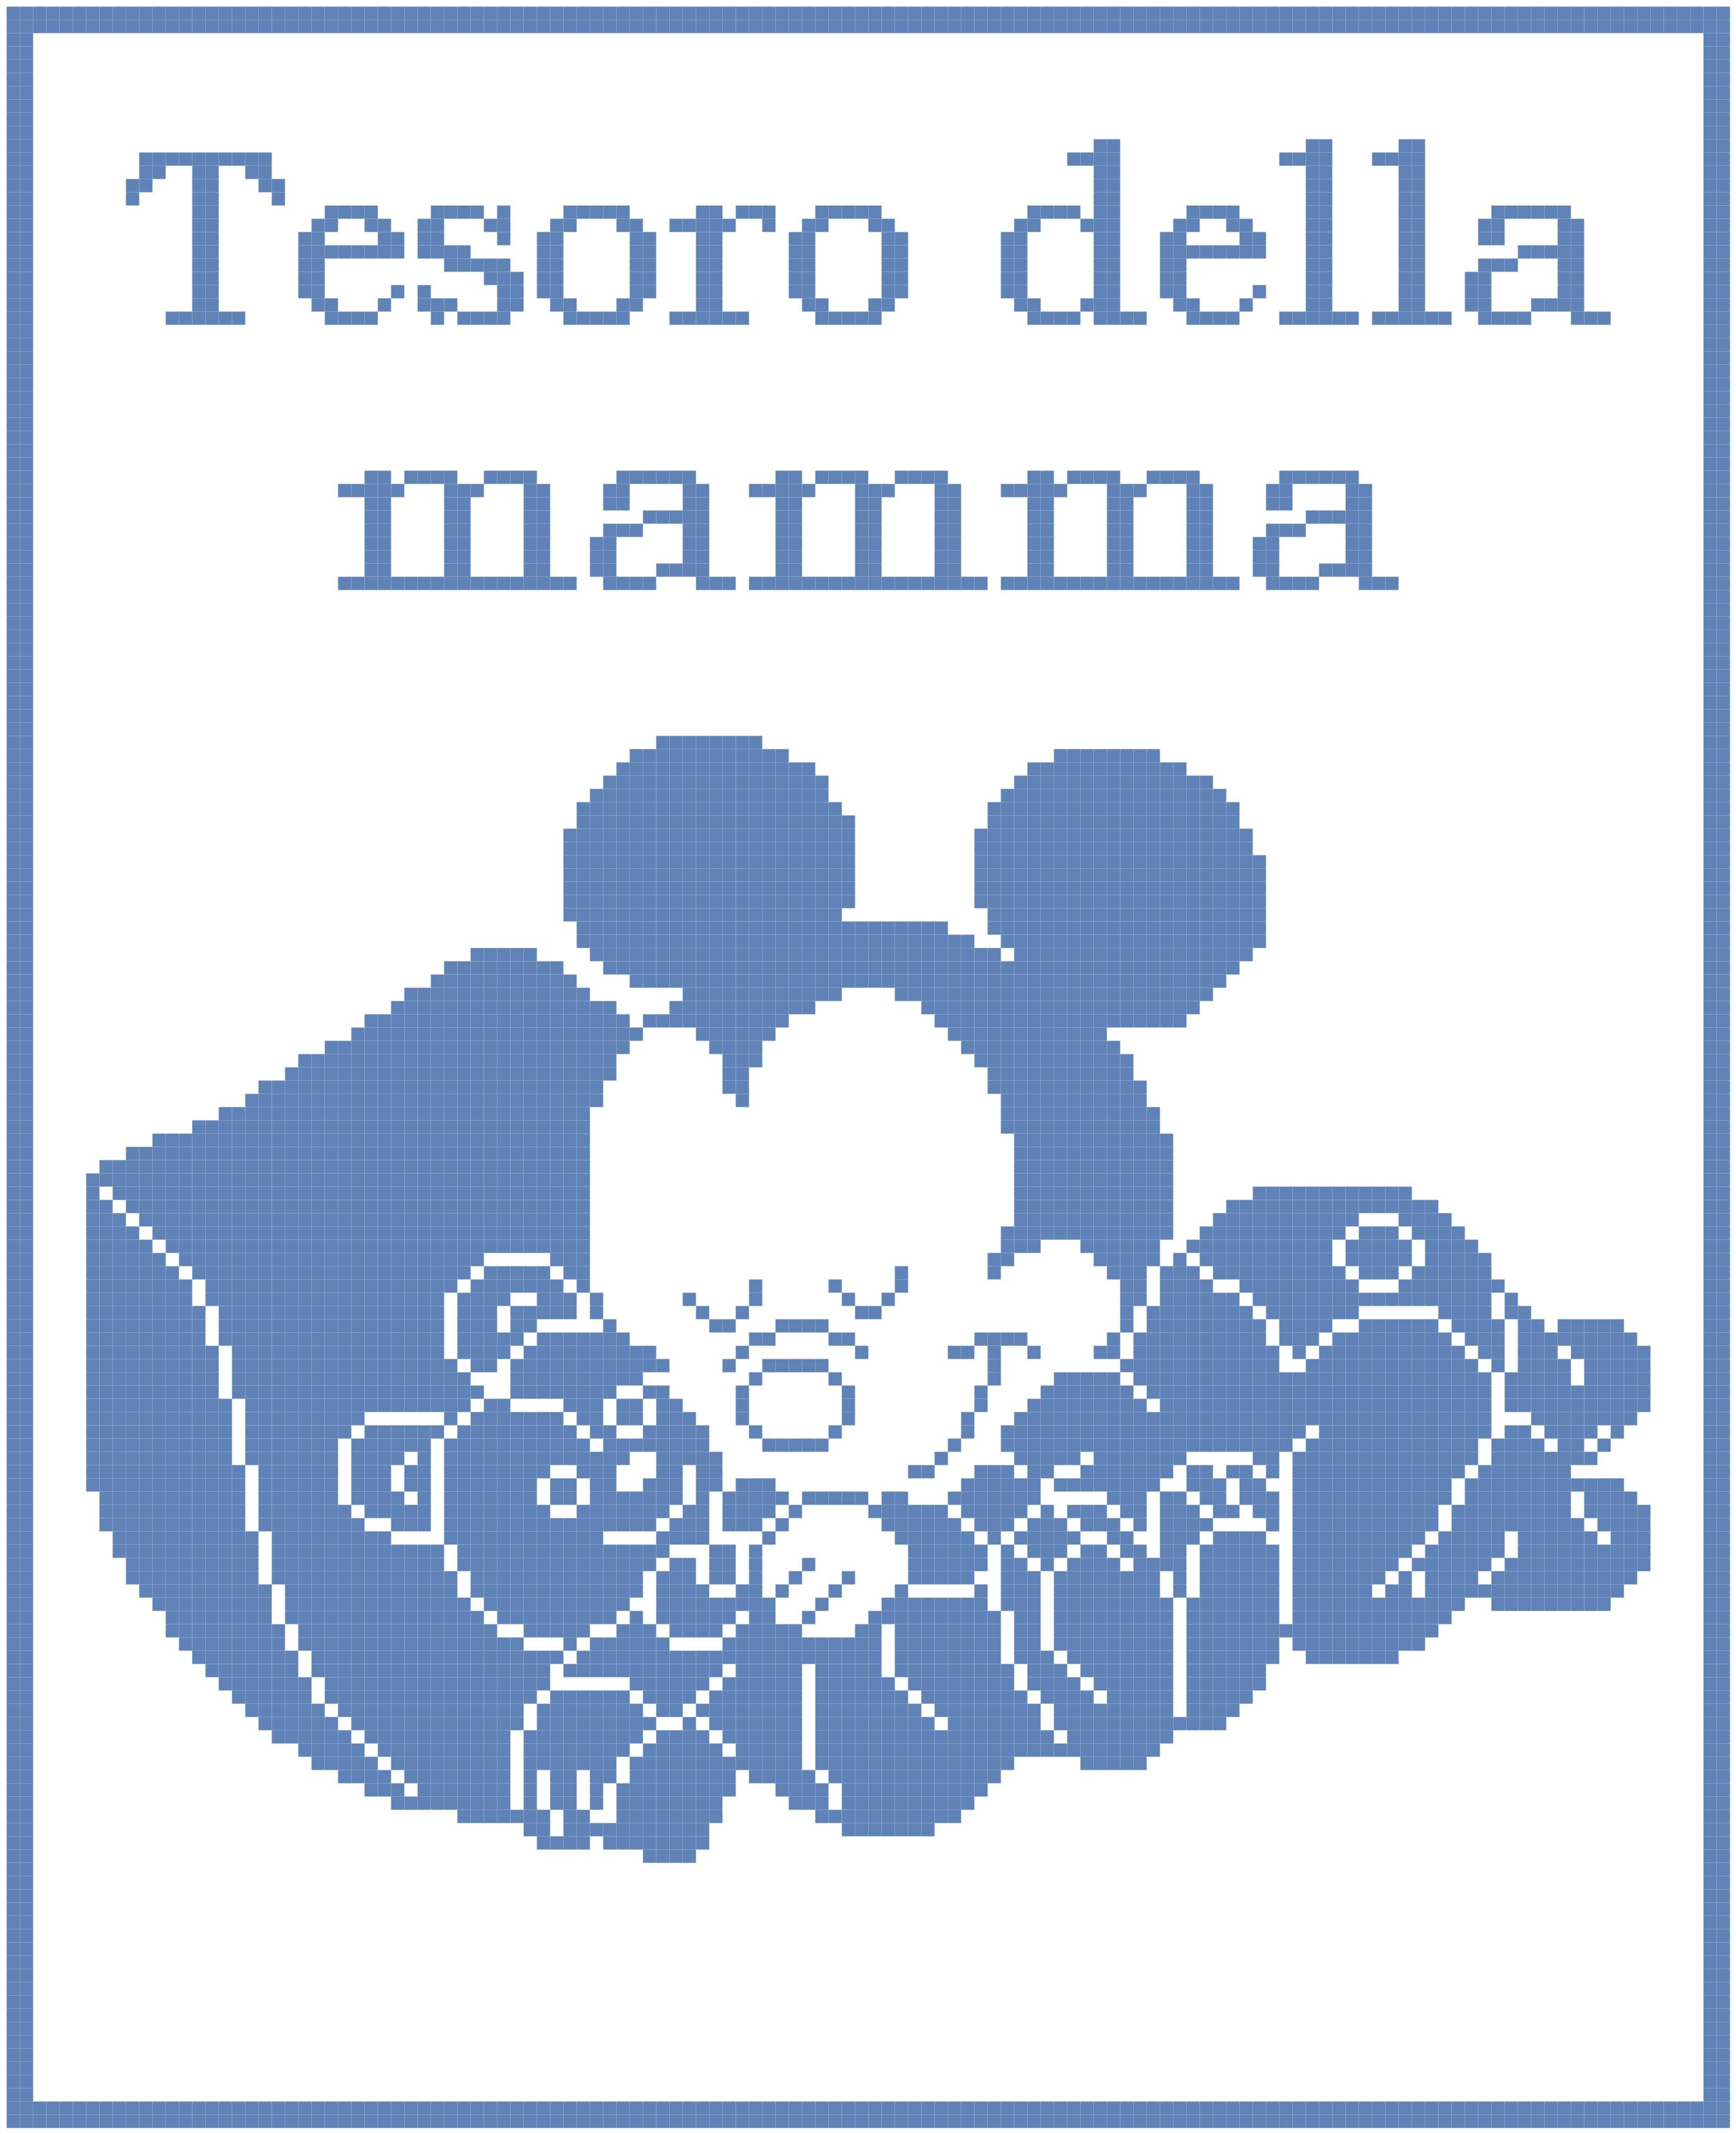 Schema filet uncinetto copertina con baby Topolno che dorme con orsetto